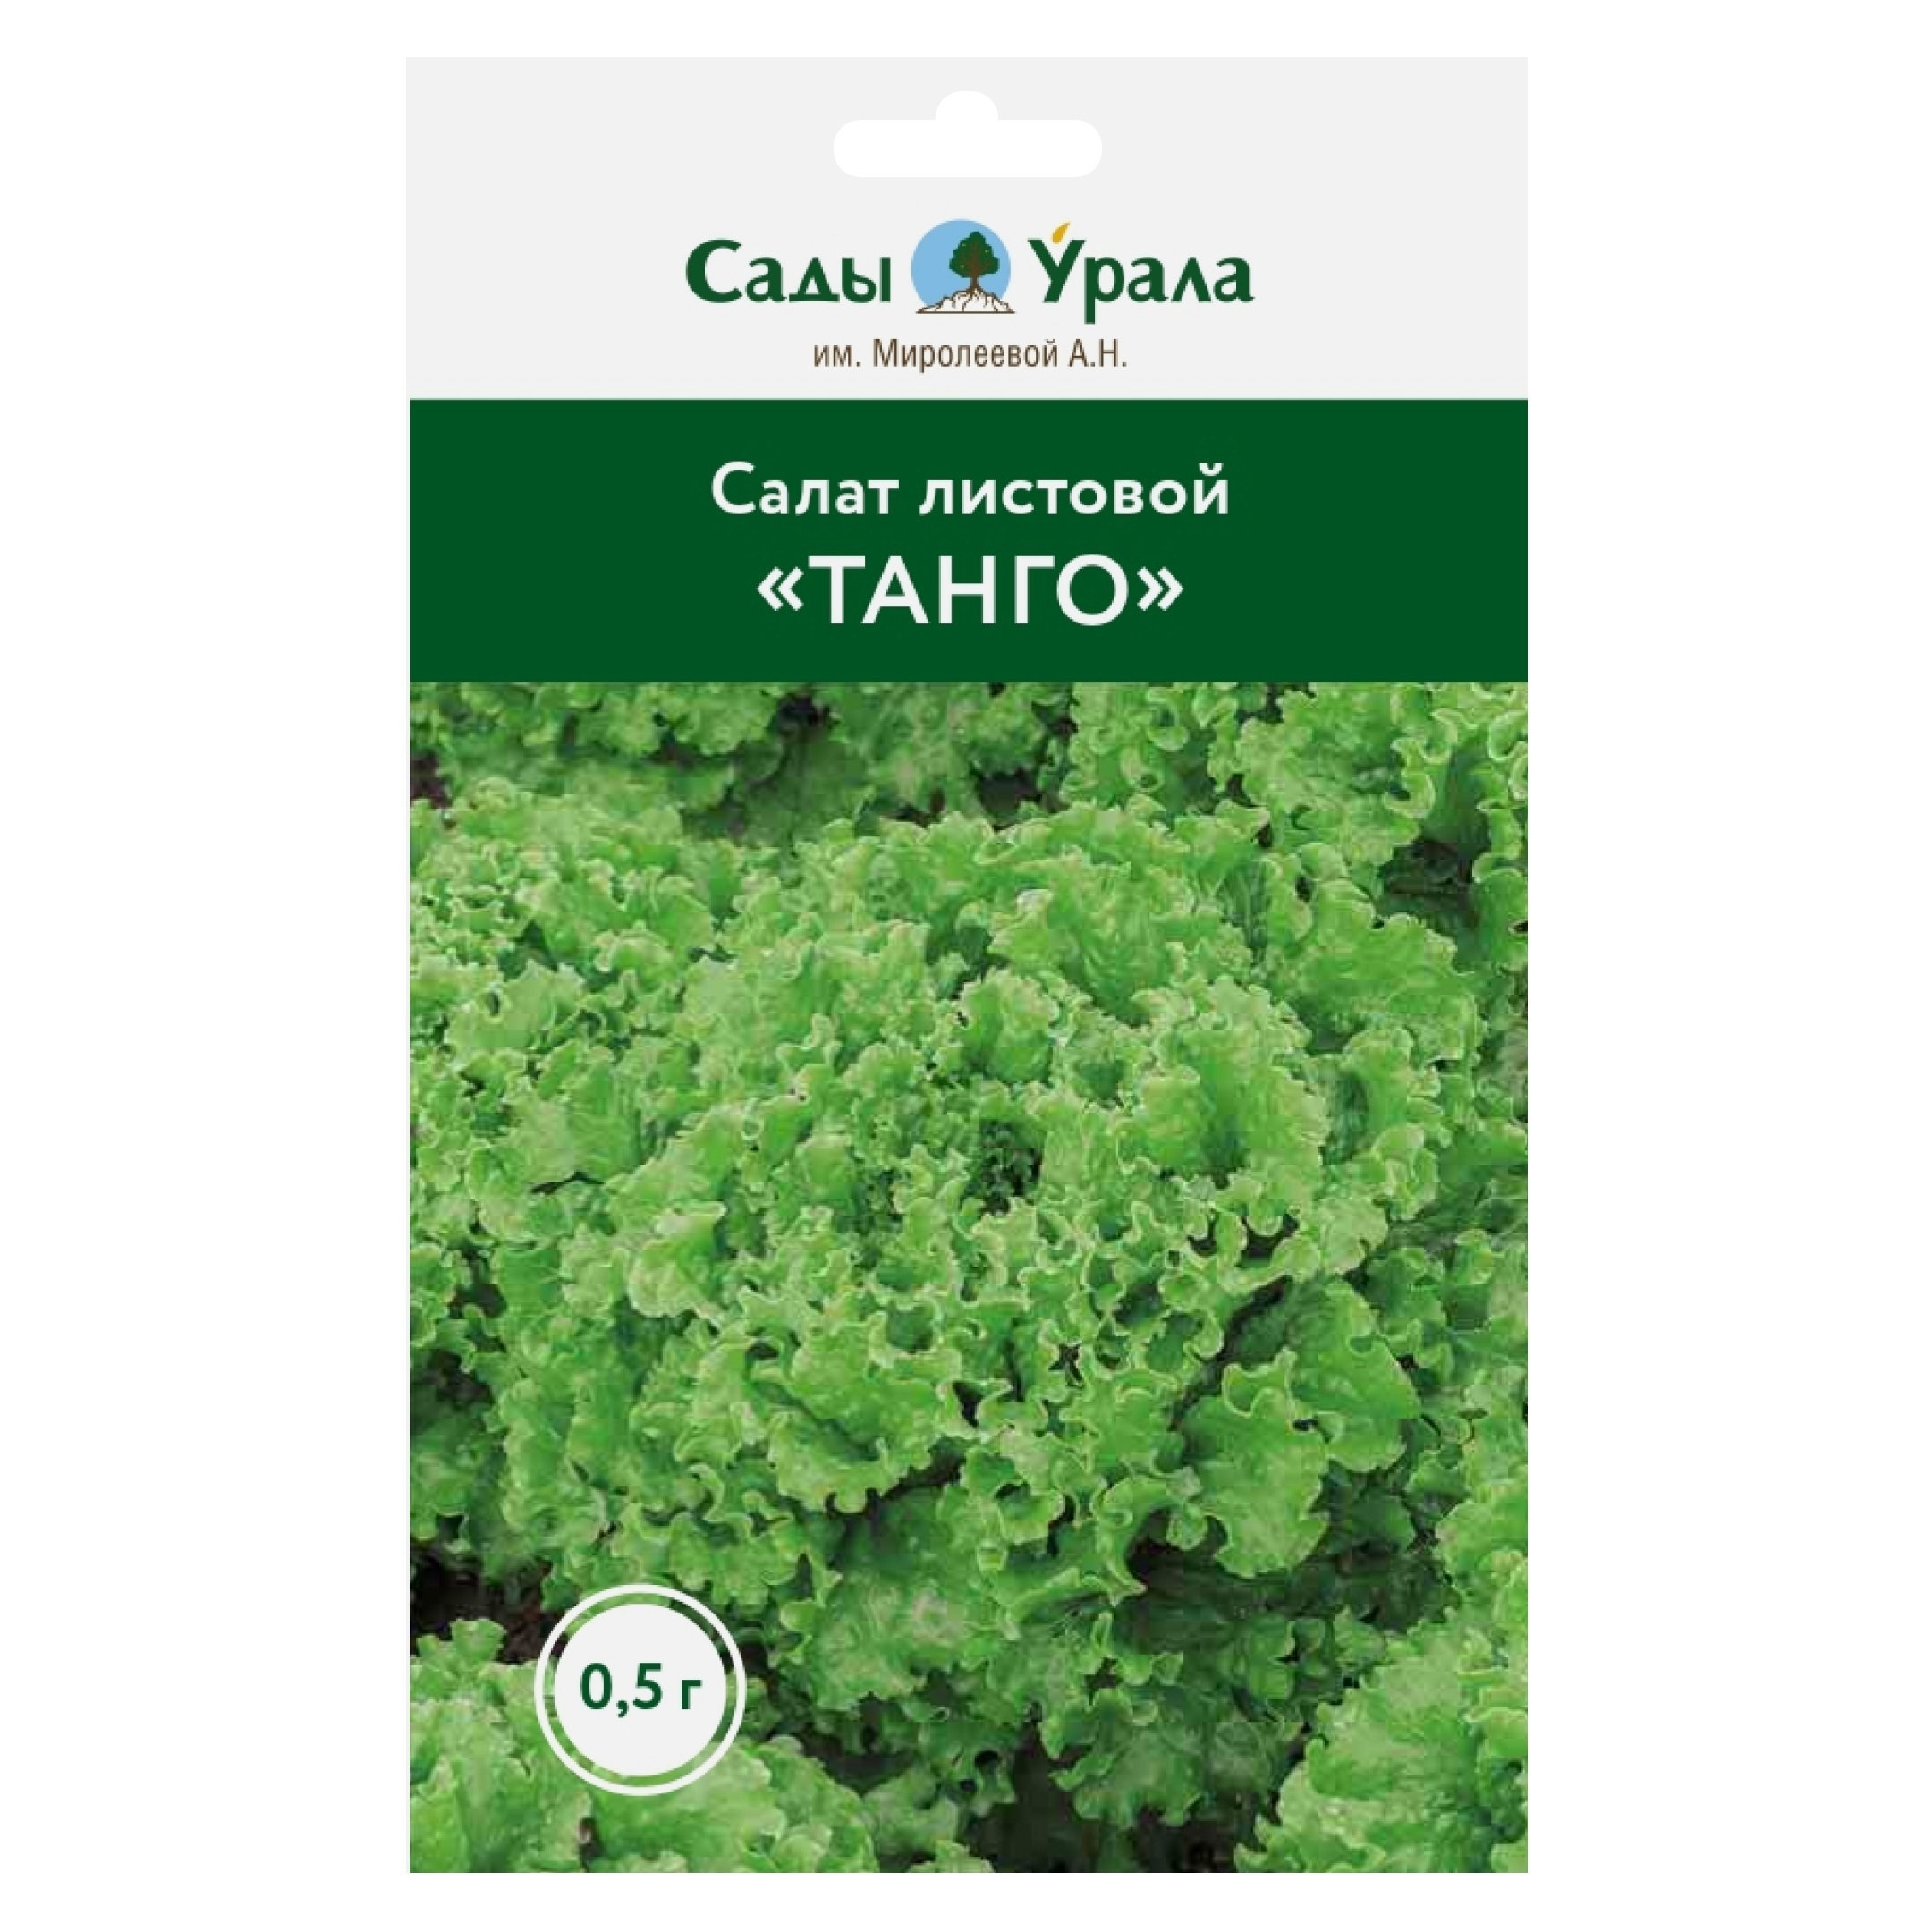 Семена овощей салат листовой Танго в Казани – купить по низкой цене винтернет-магазине Леруа Мерлен